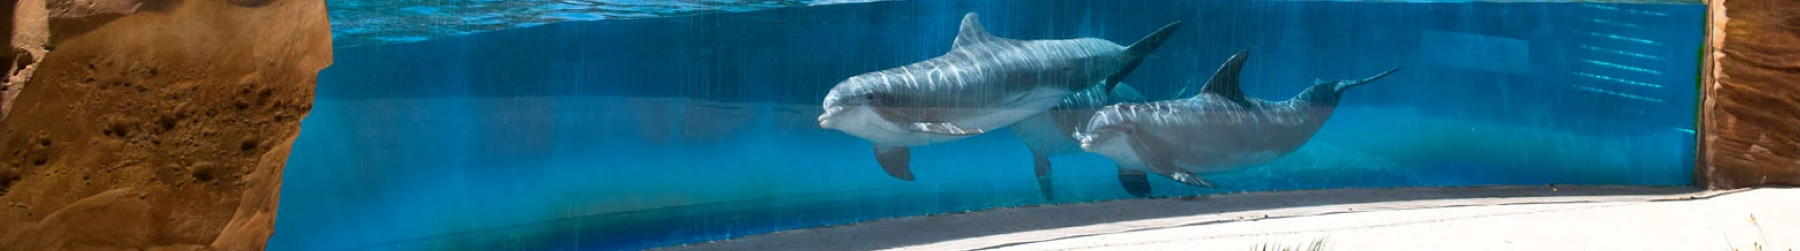 SeaWorld San Antonio Dolphin Encounter